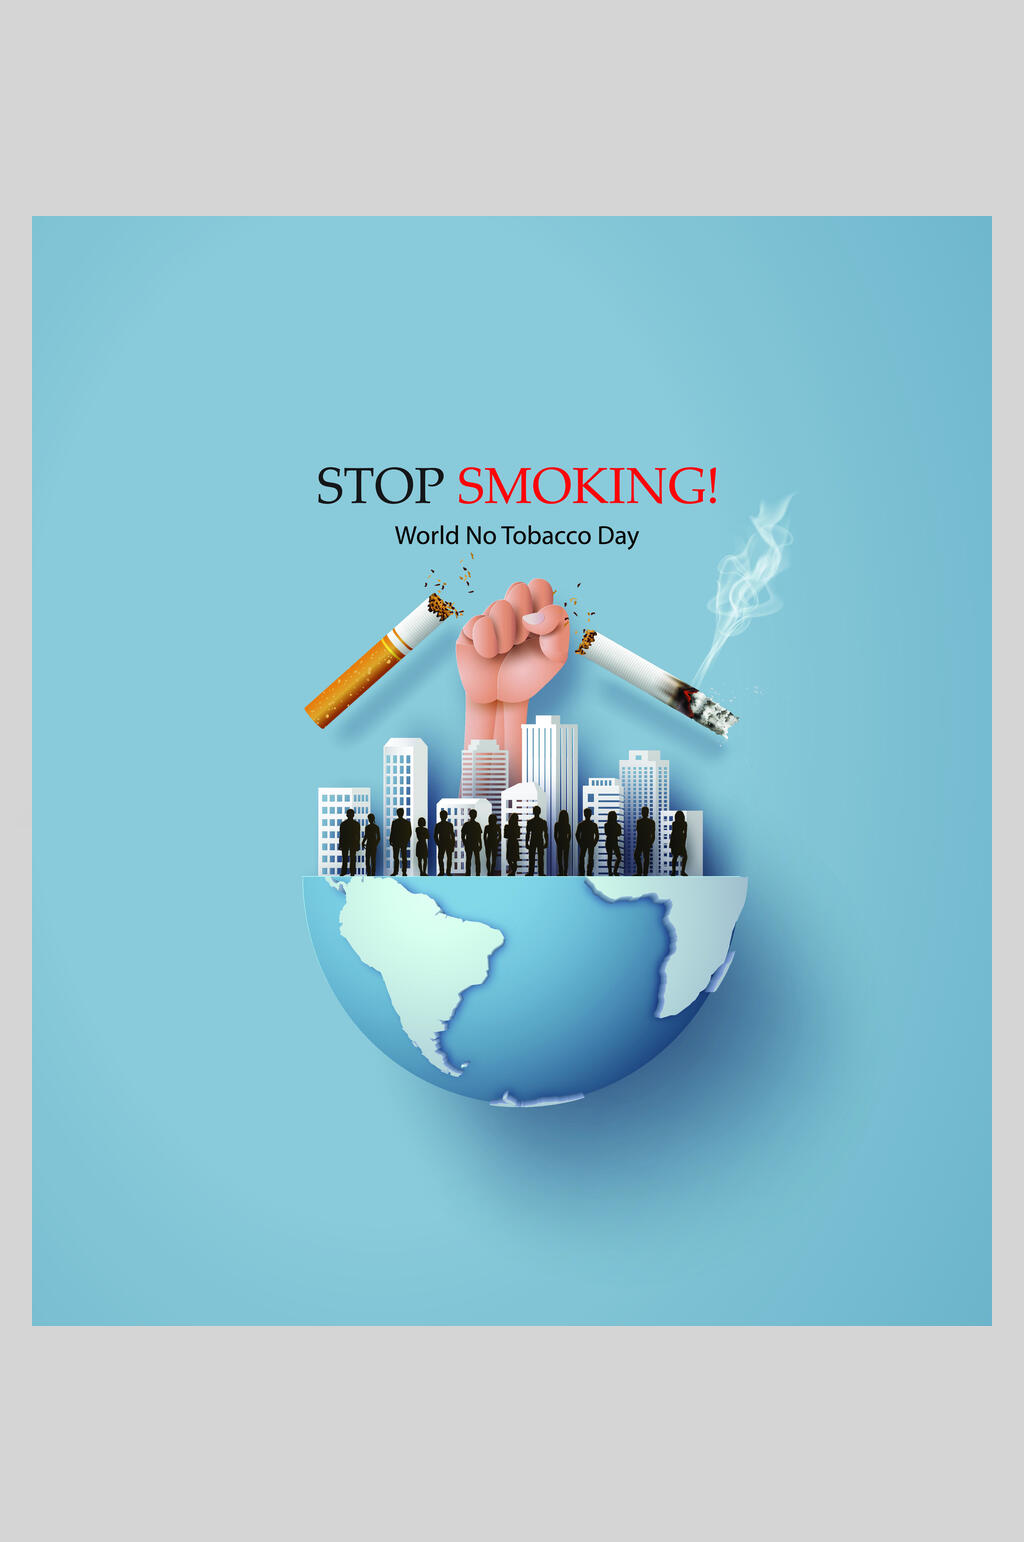 禁止吸烟英语海报图片